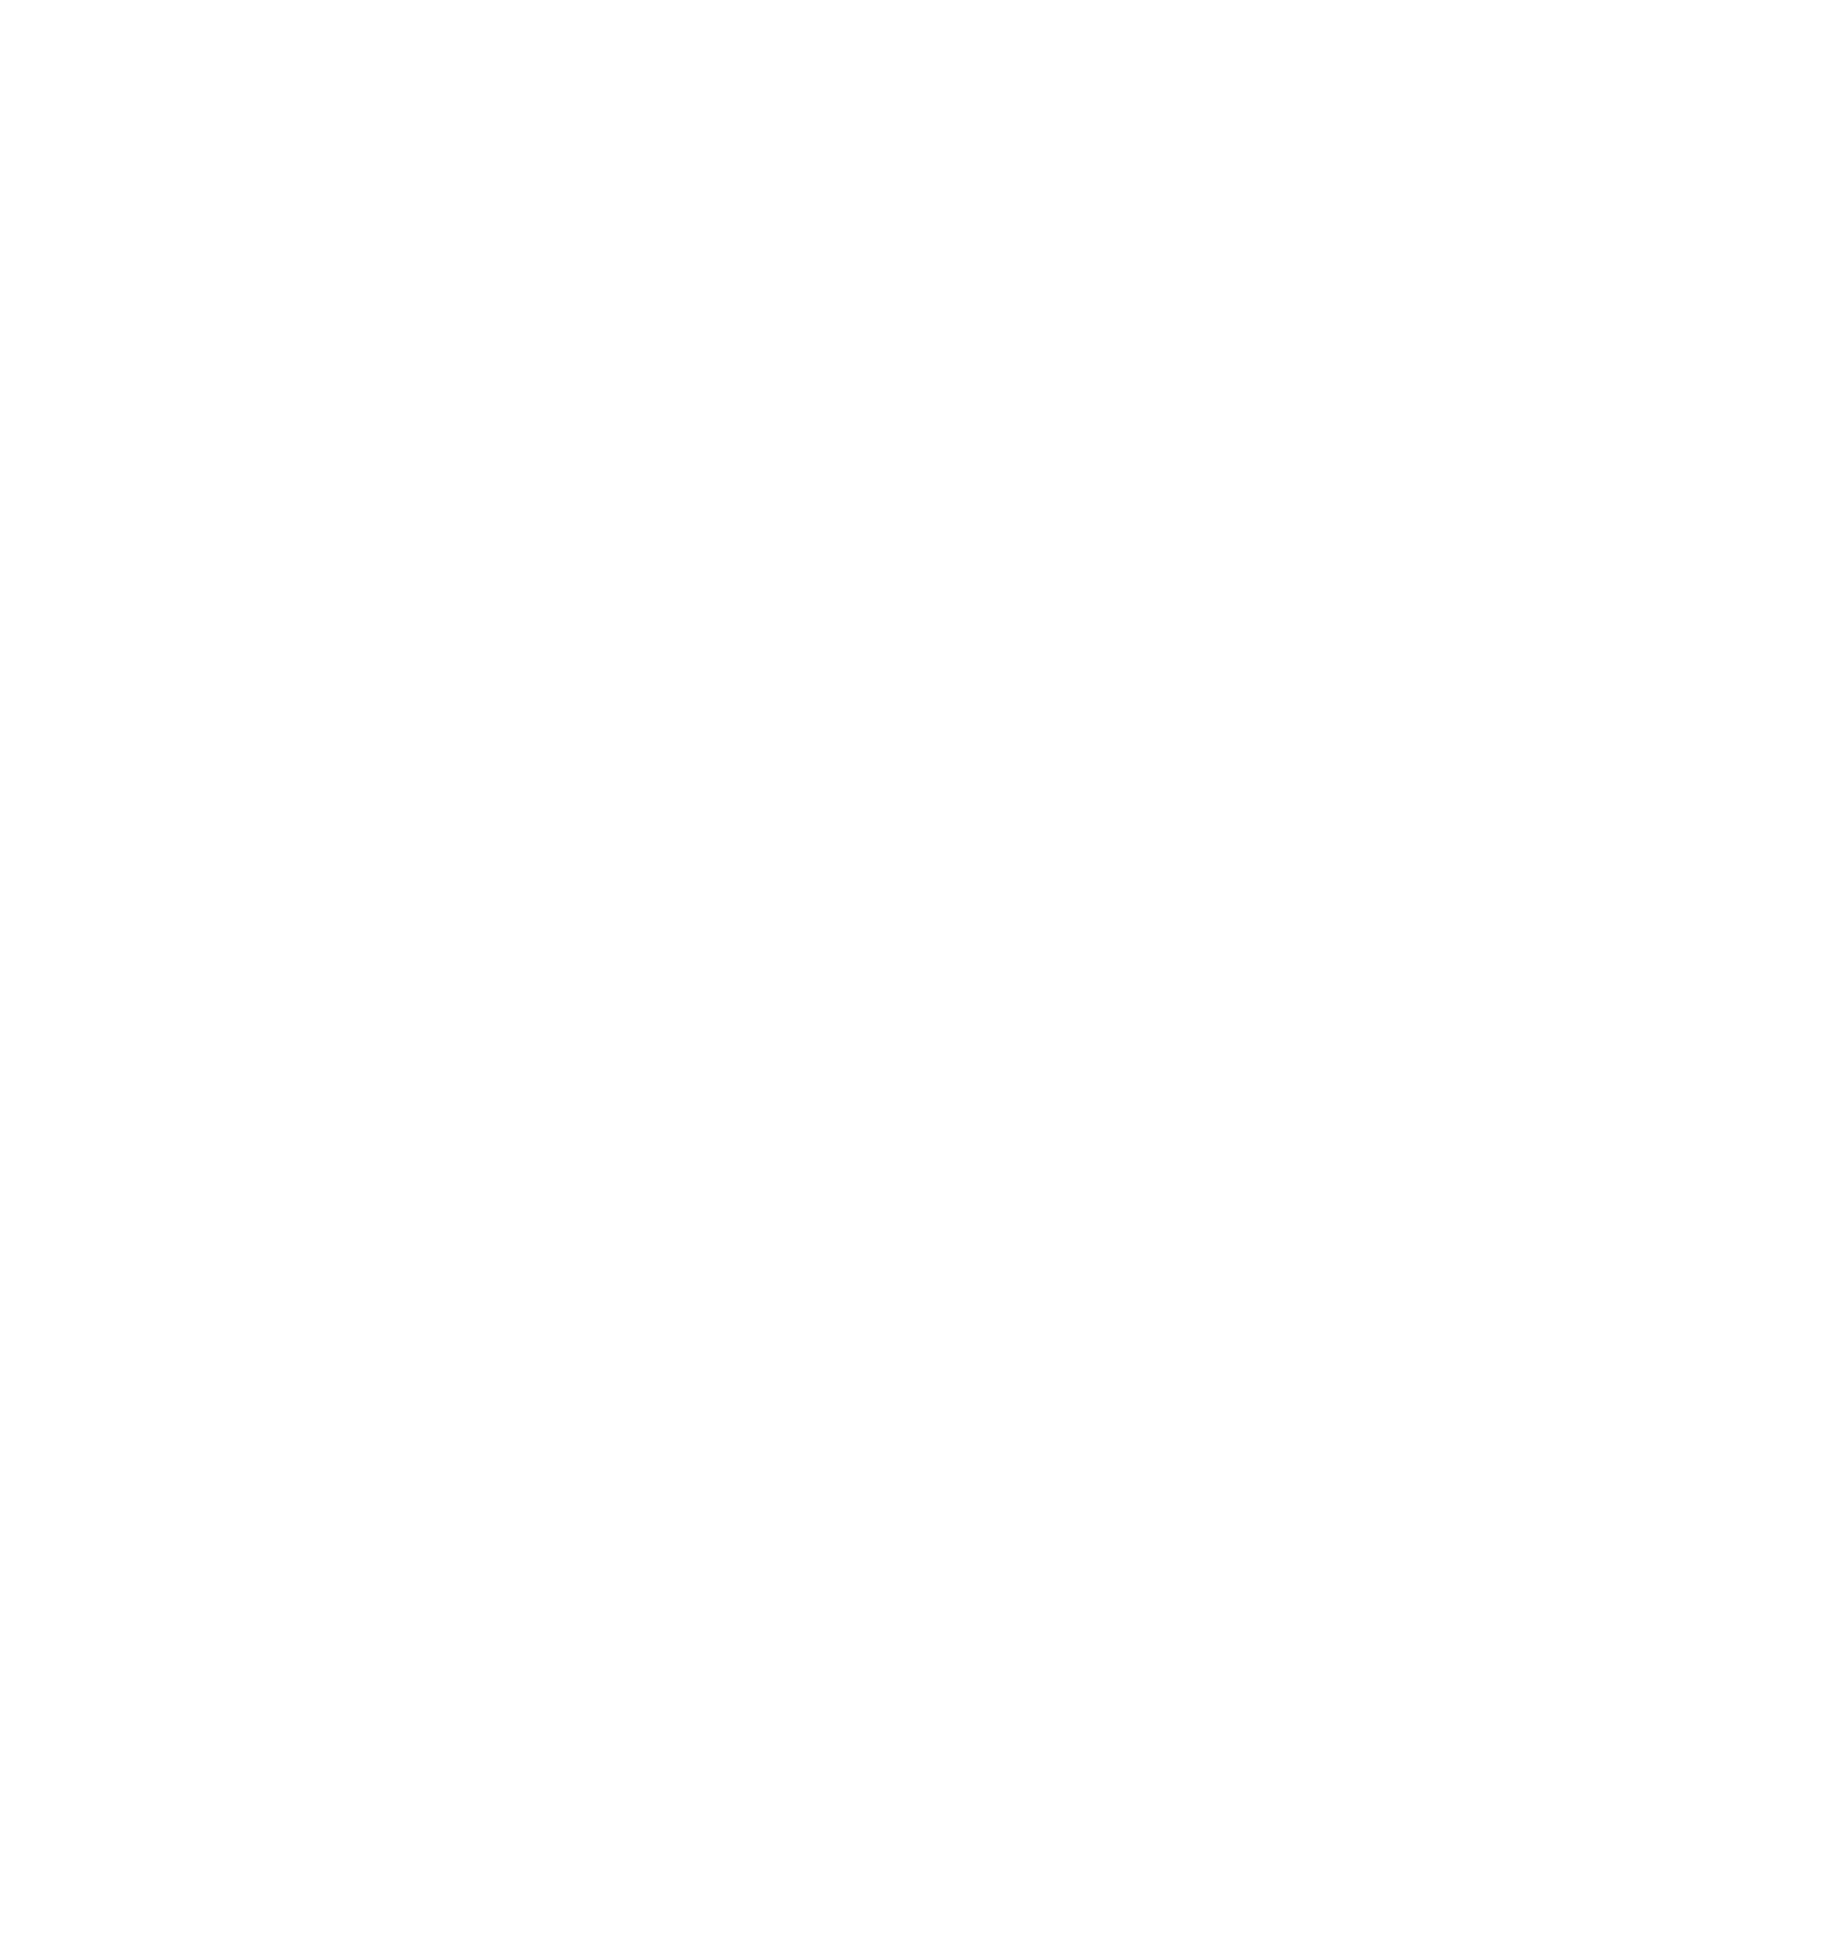 Schai Content Strategen